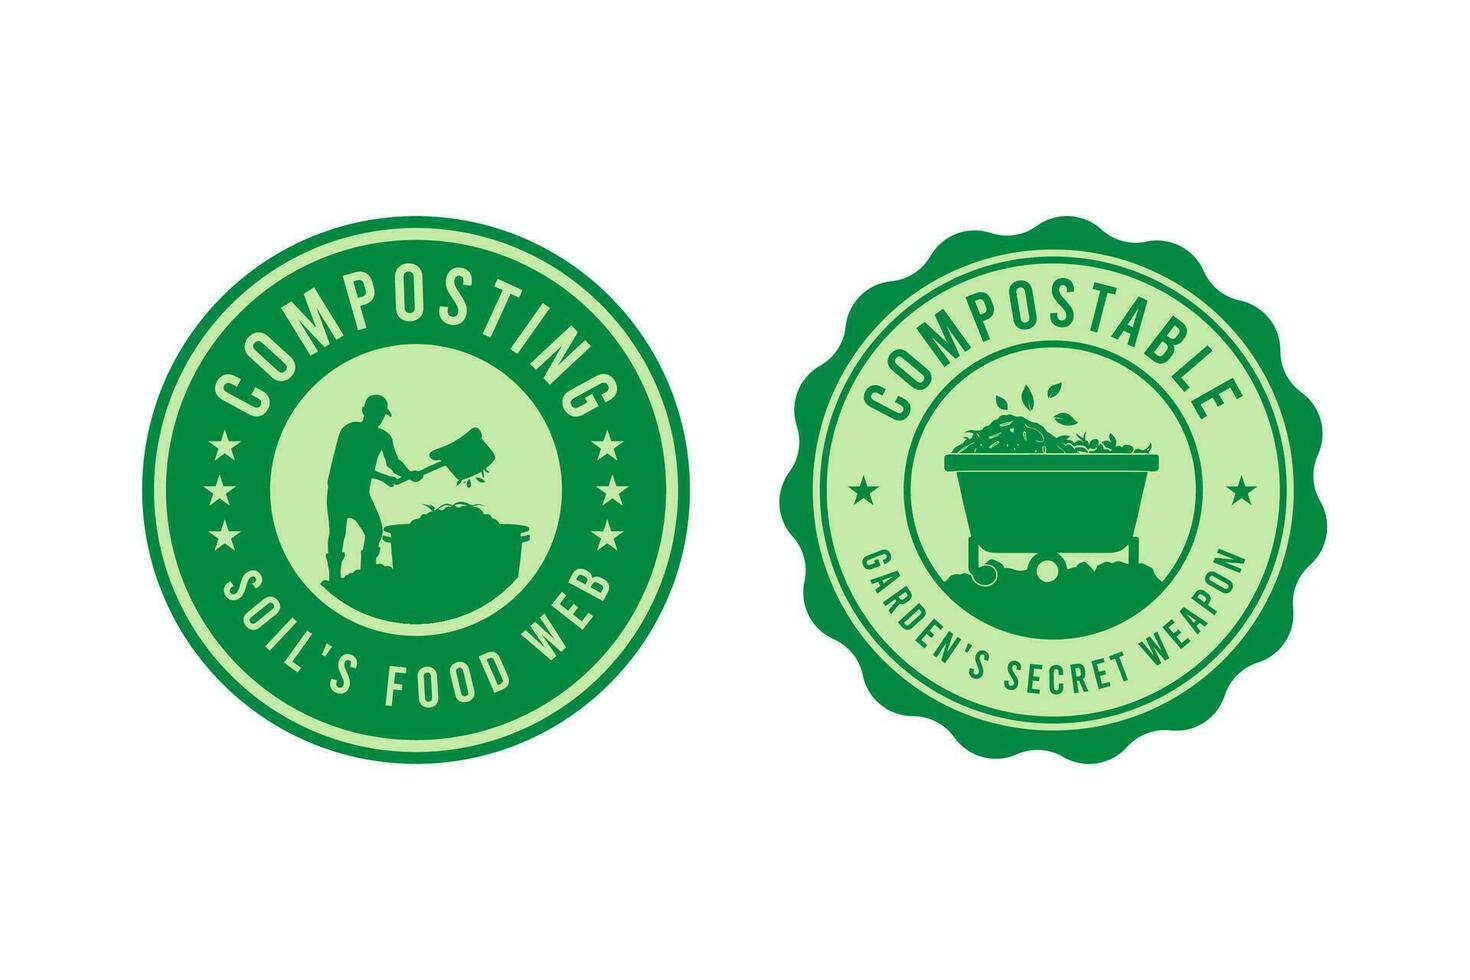 le compostage badge logo conception illustration vecteur